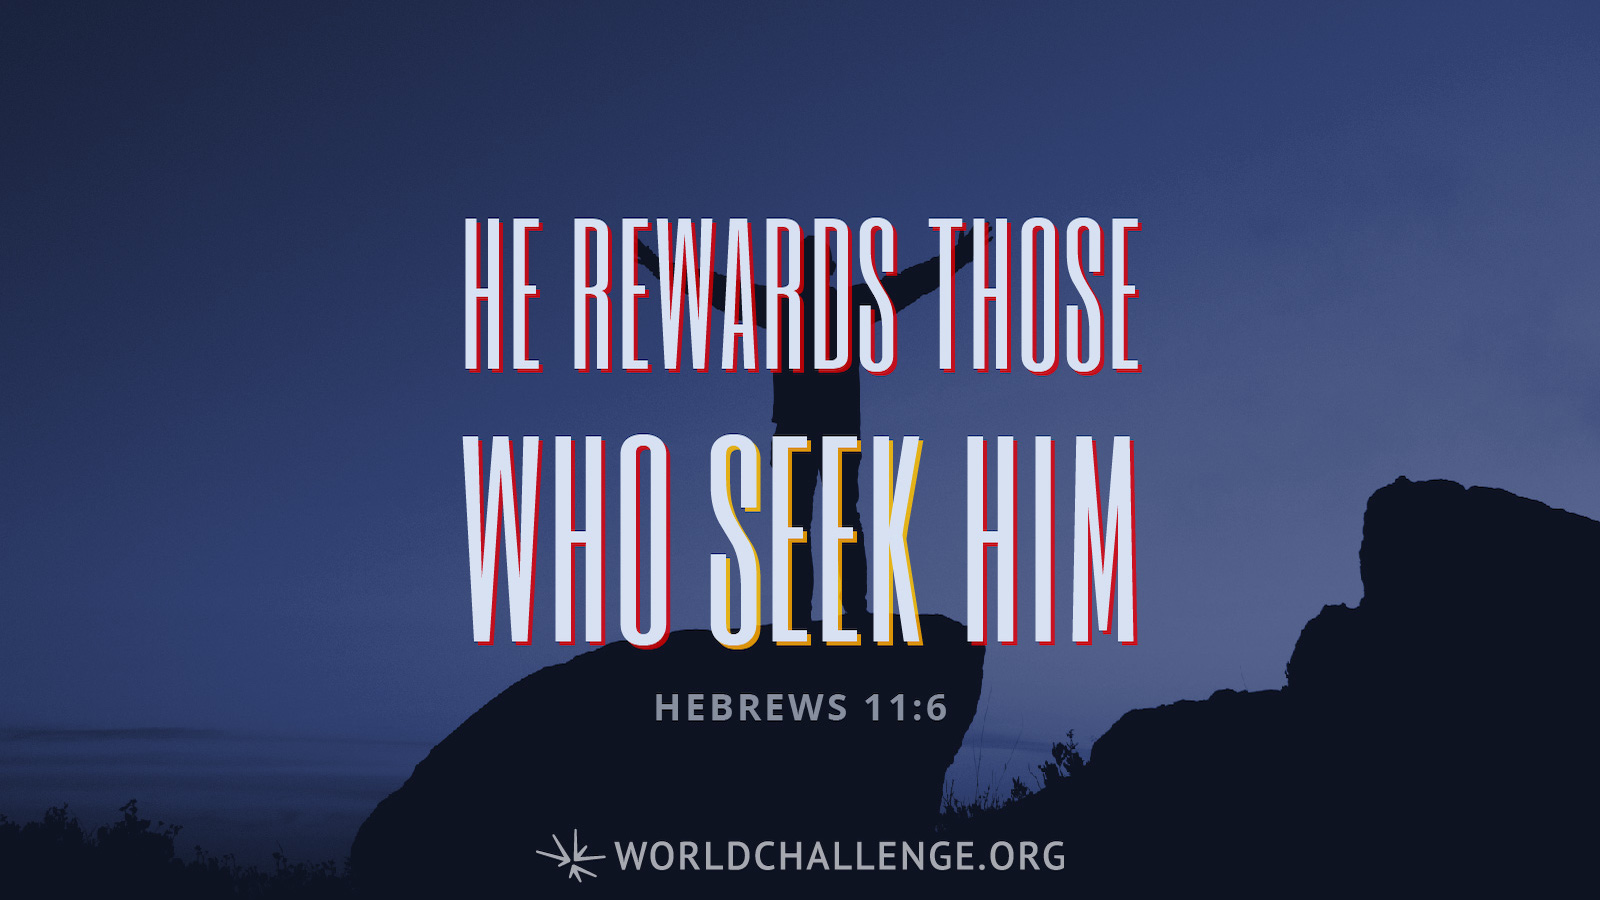 Hebrews 11:6 